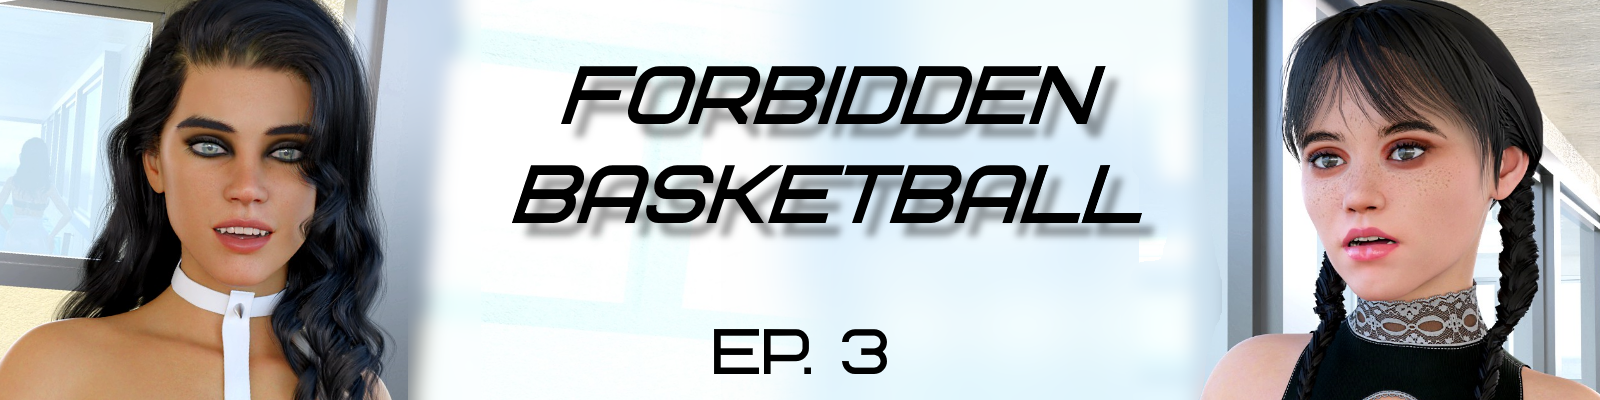 Forbidden Basketball1.png